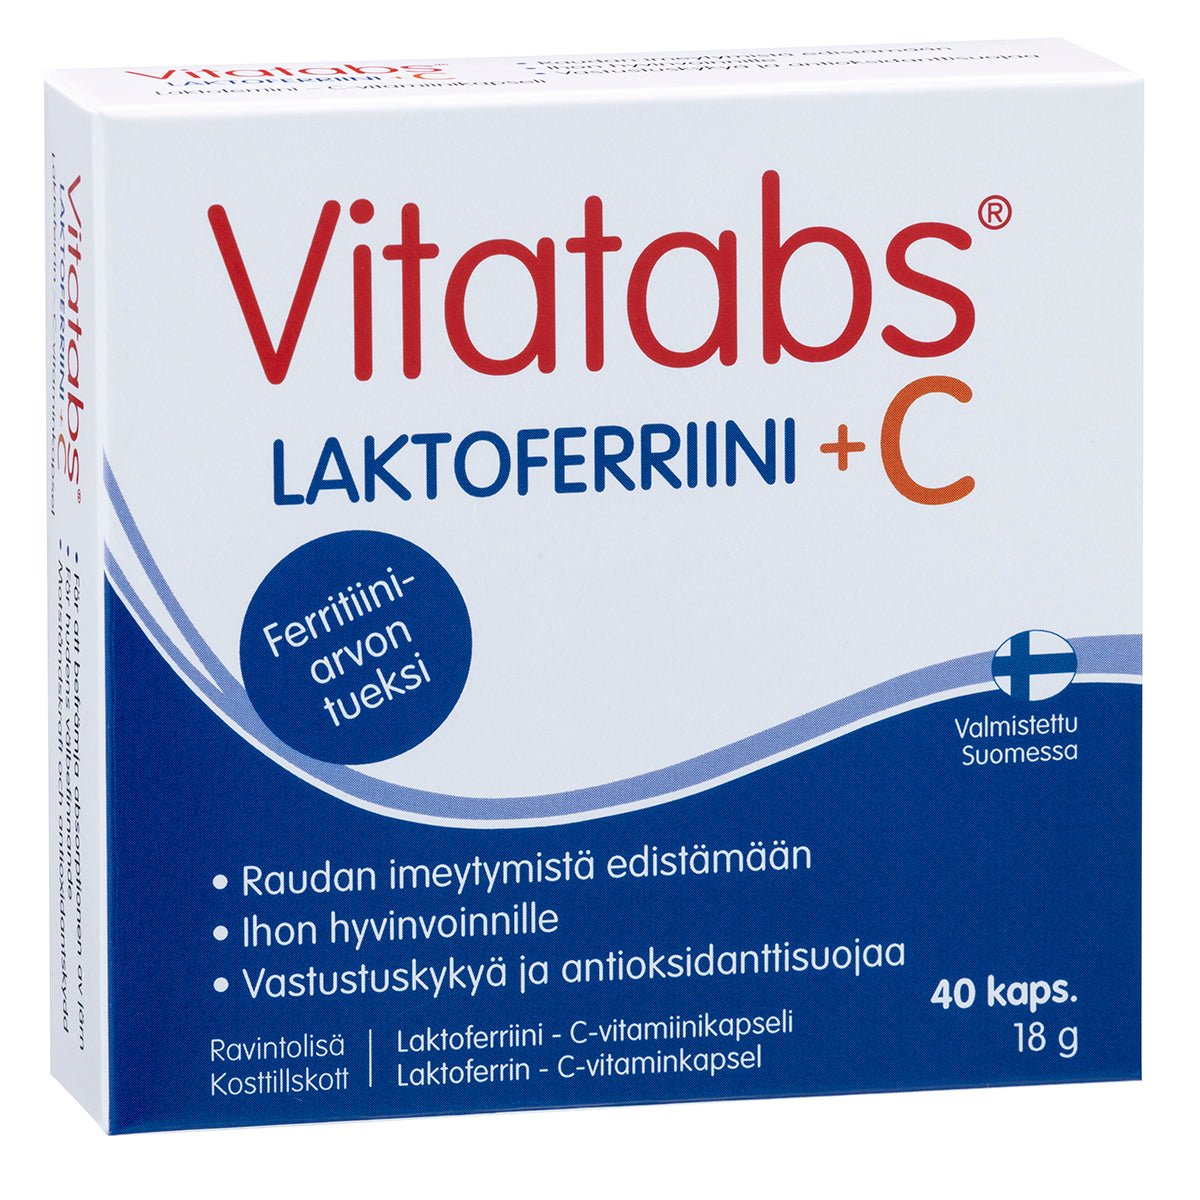 Hankintatukku Vitatabs® Laktoferriini + C, 40 kaps.